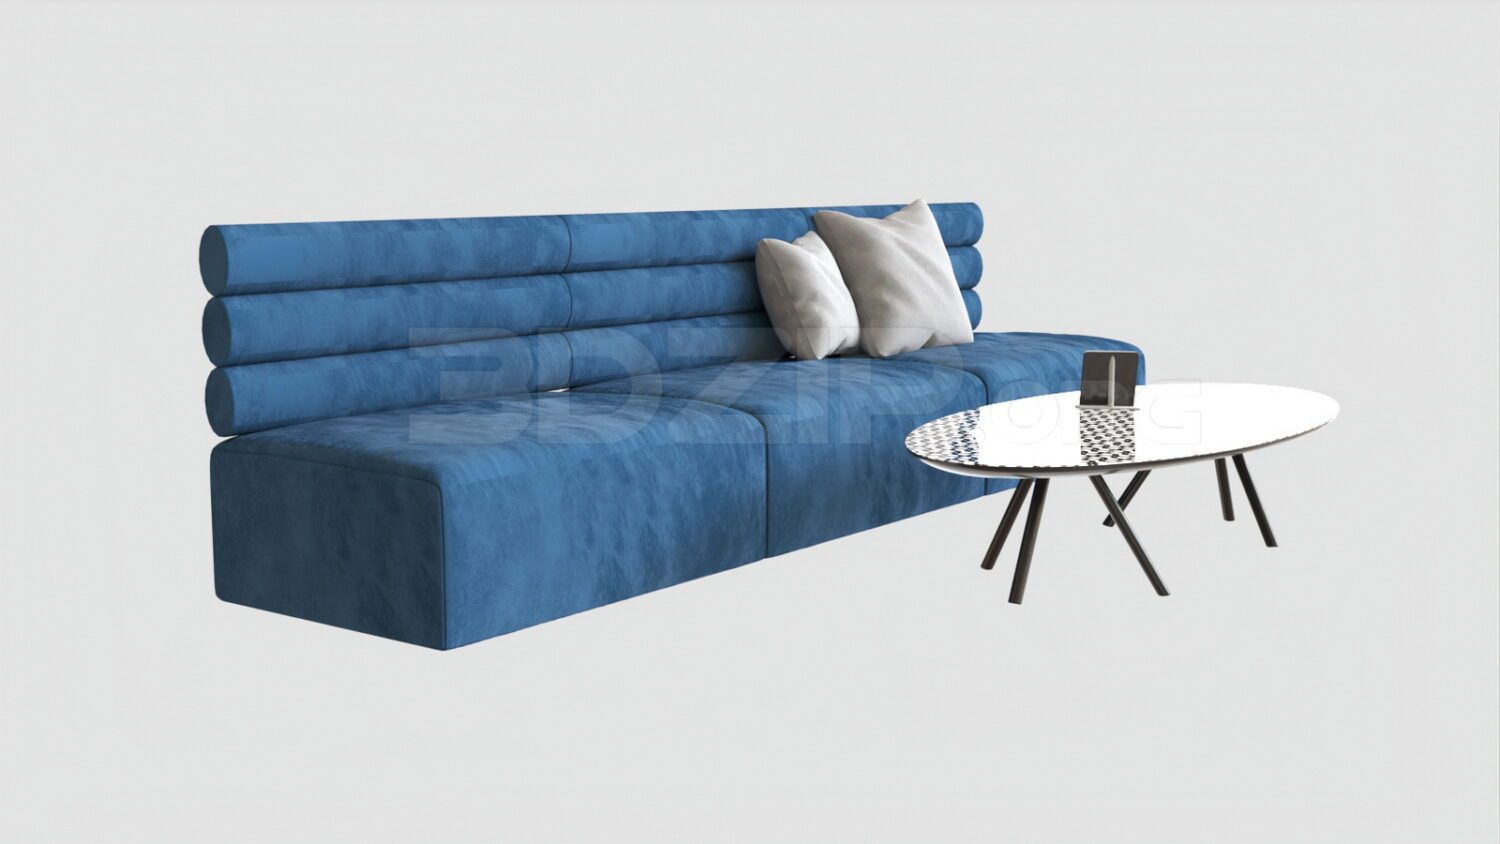 4165. Free 3D Sofa Model Download